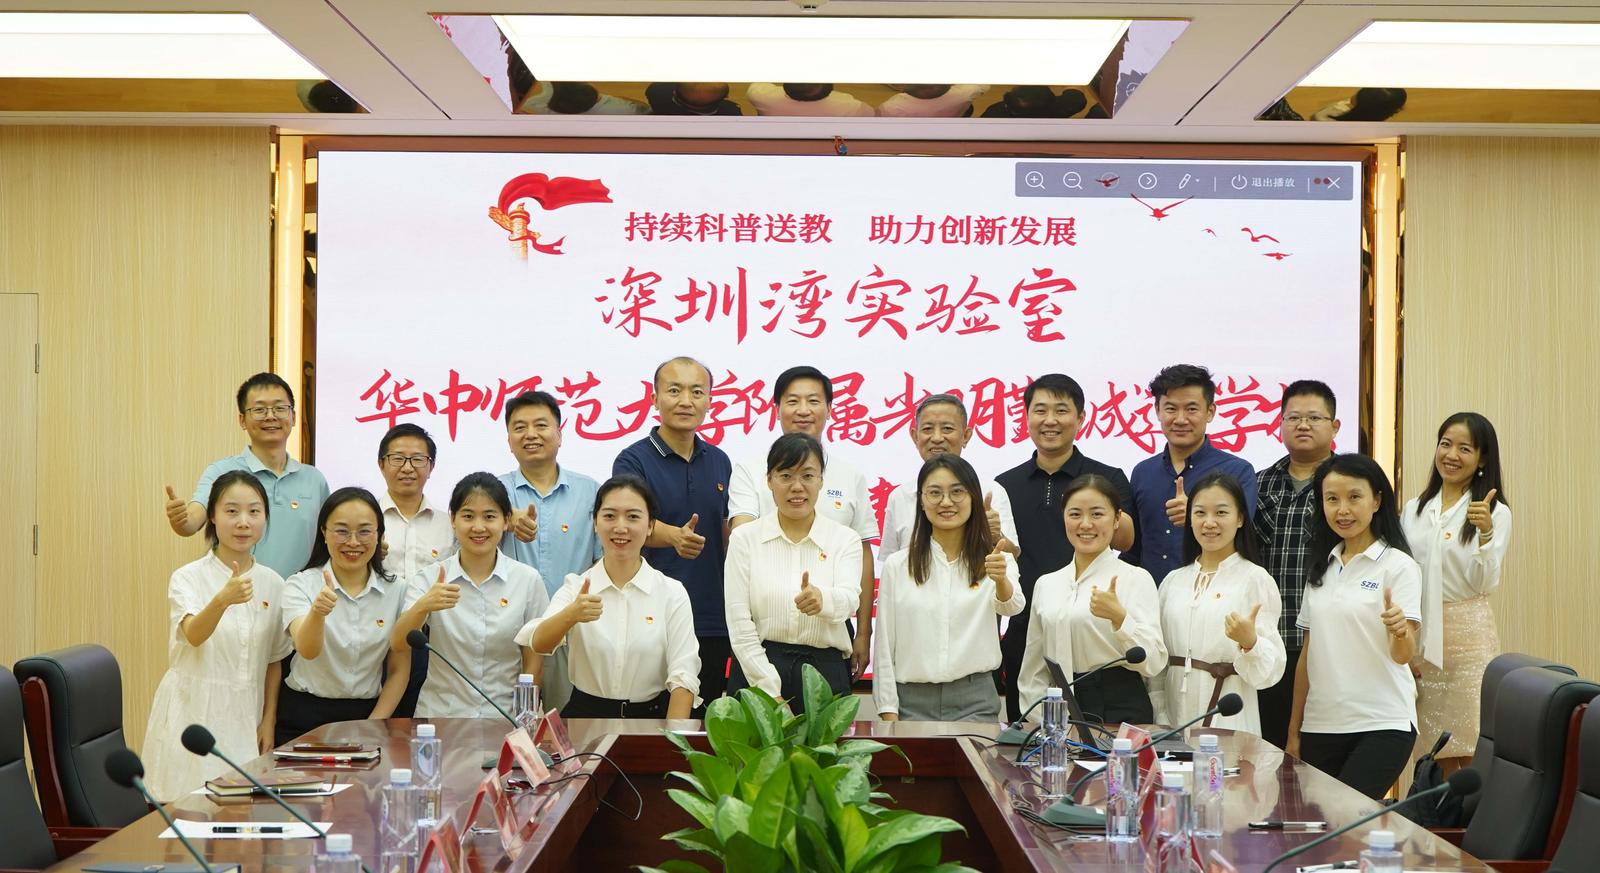 深圳湾实验室举办“持续科普送教 助力创新发展”联合主题党日活动